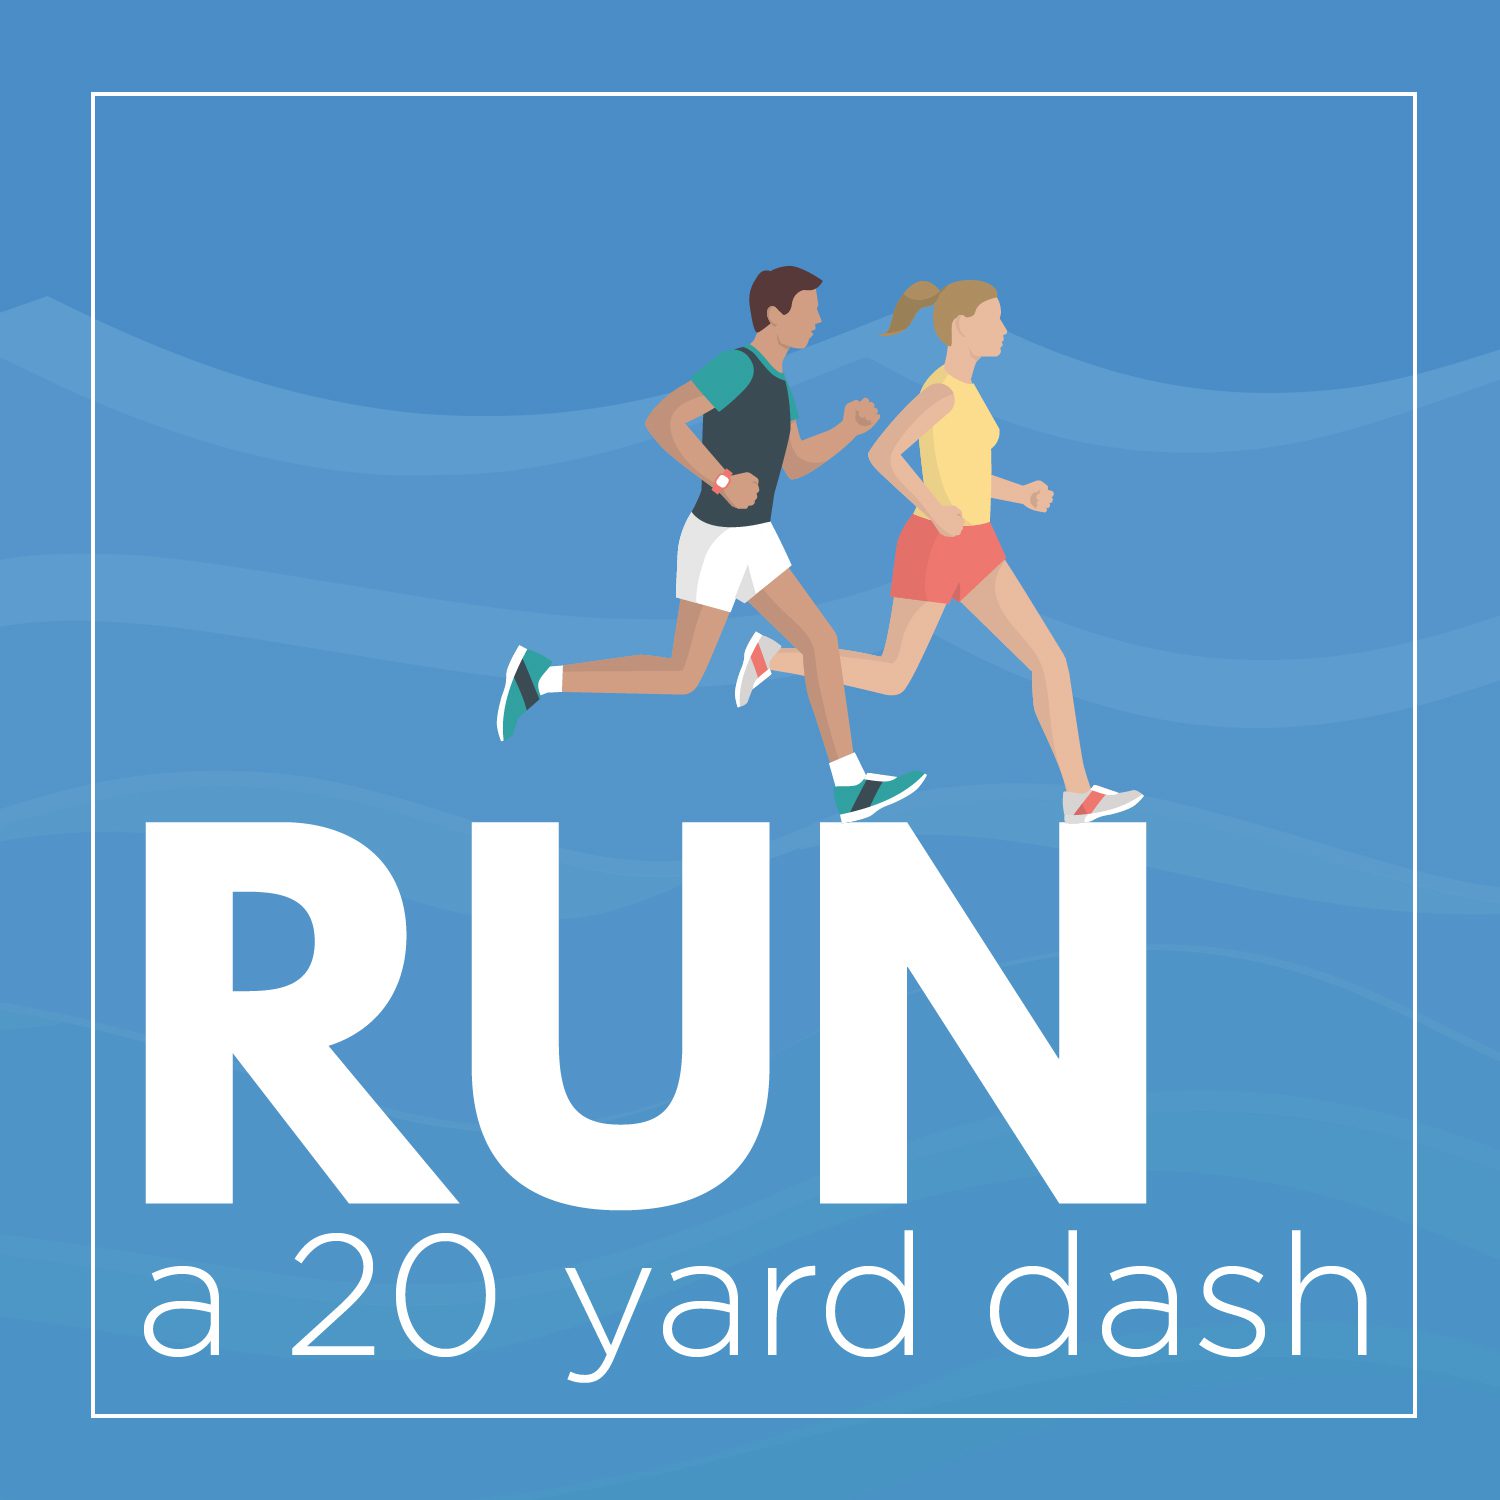 Run a 20 yard dash